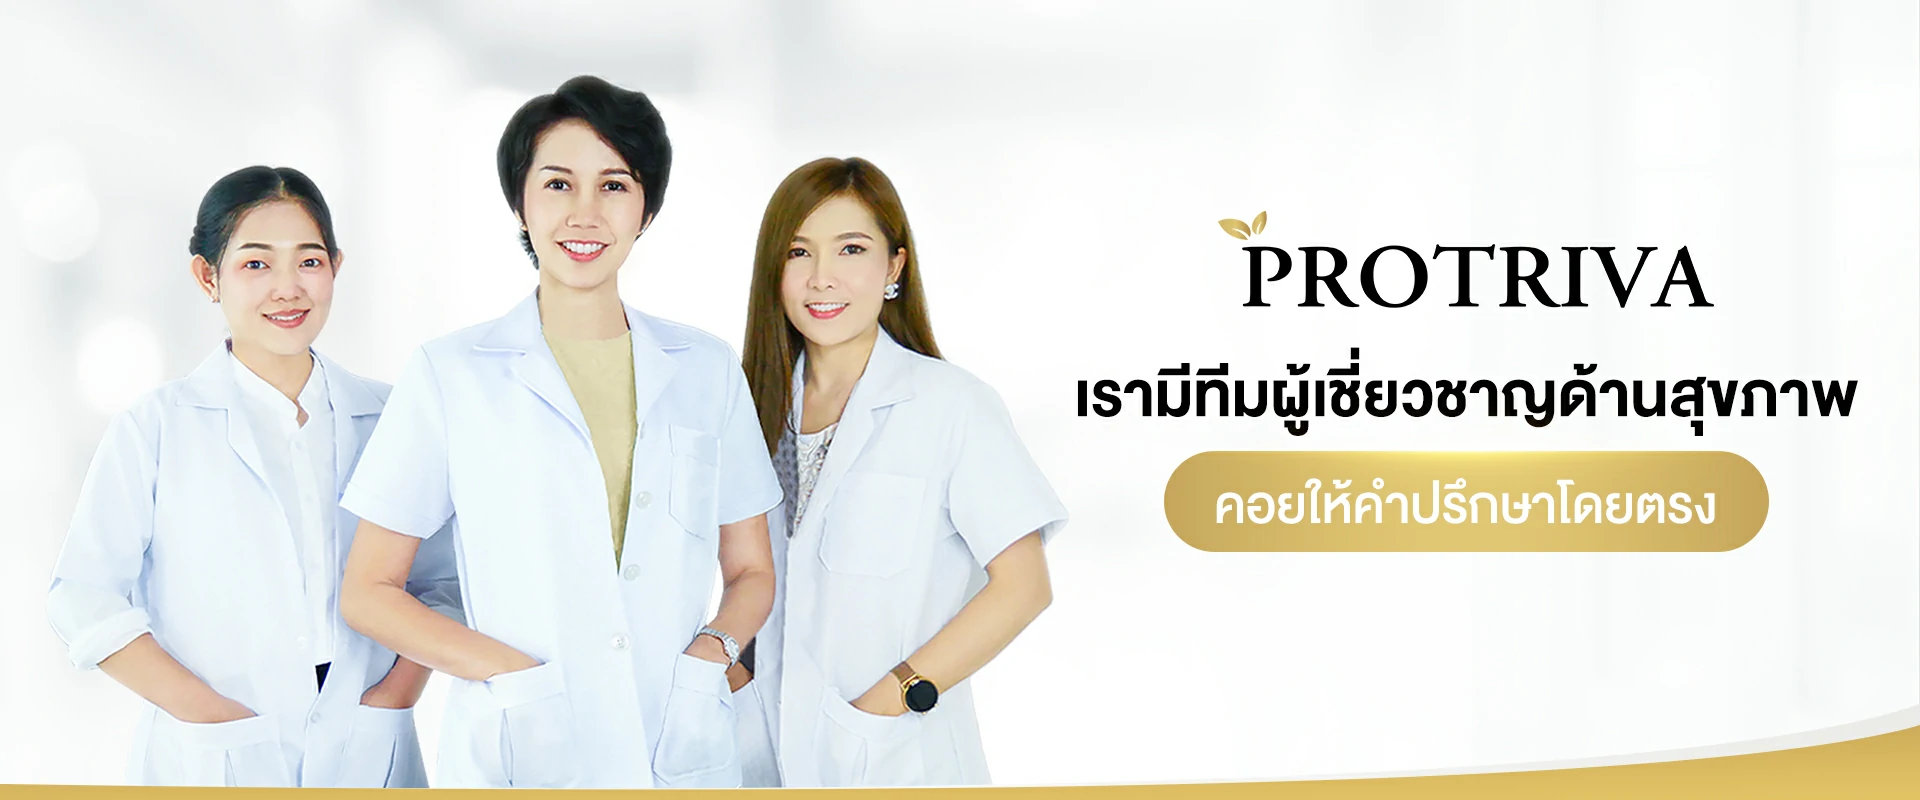 Protriva ปรึกษาผู้เชี่ยวชาญ อาหารเสริมโปรทริว่า Protriva น้ำมันสกัดเย็นเกรดพรีเมี่ยม ให้ความสำคัญกับสุขภาพของคนไทยเป็นอันดับ 1 ส่งมอบสุขภาพดีผ่านผลิตภัณฑ์จากผู้เชี่ยวชาญเพื่อ....